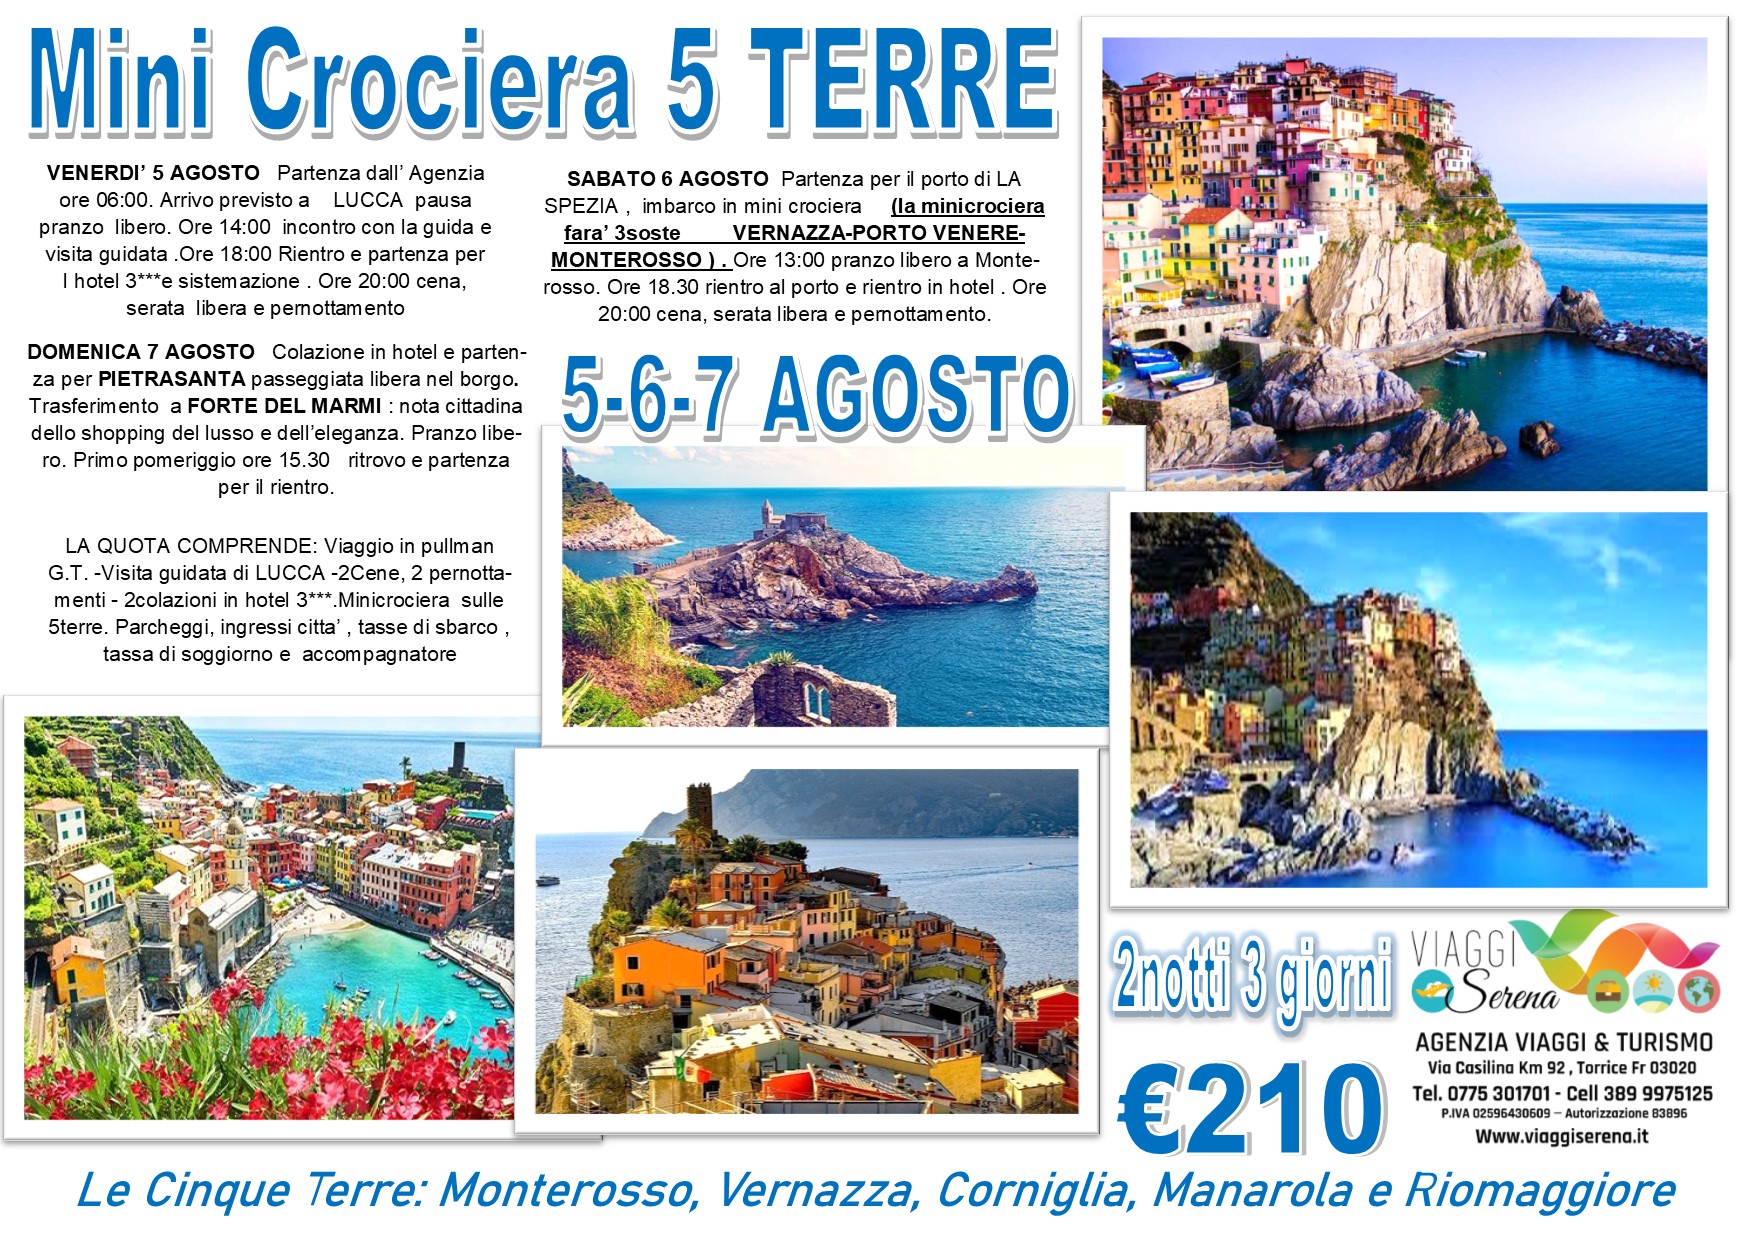 Viaggi di Gruppo: Mini Crociera 5 Terre, Lucca, Forte dei Marmi & Pietrasanta 5-6-7 Agosto €210,00